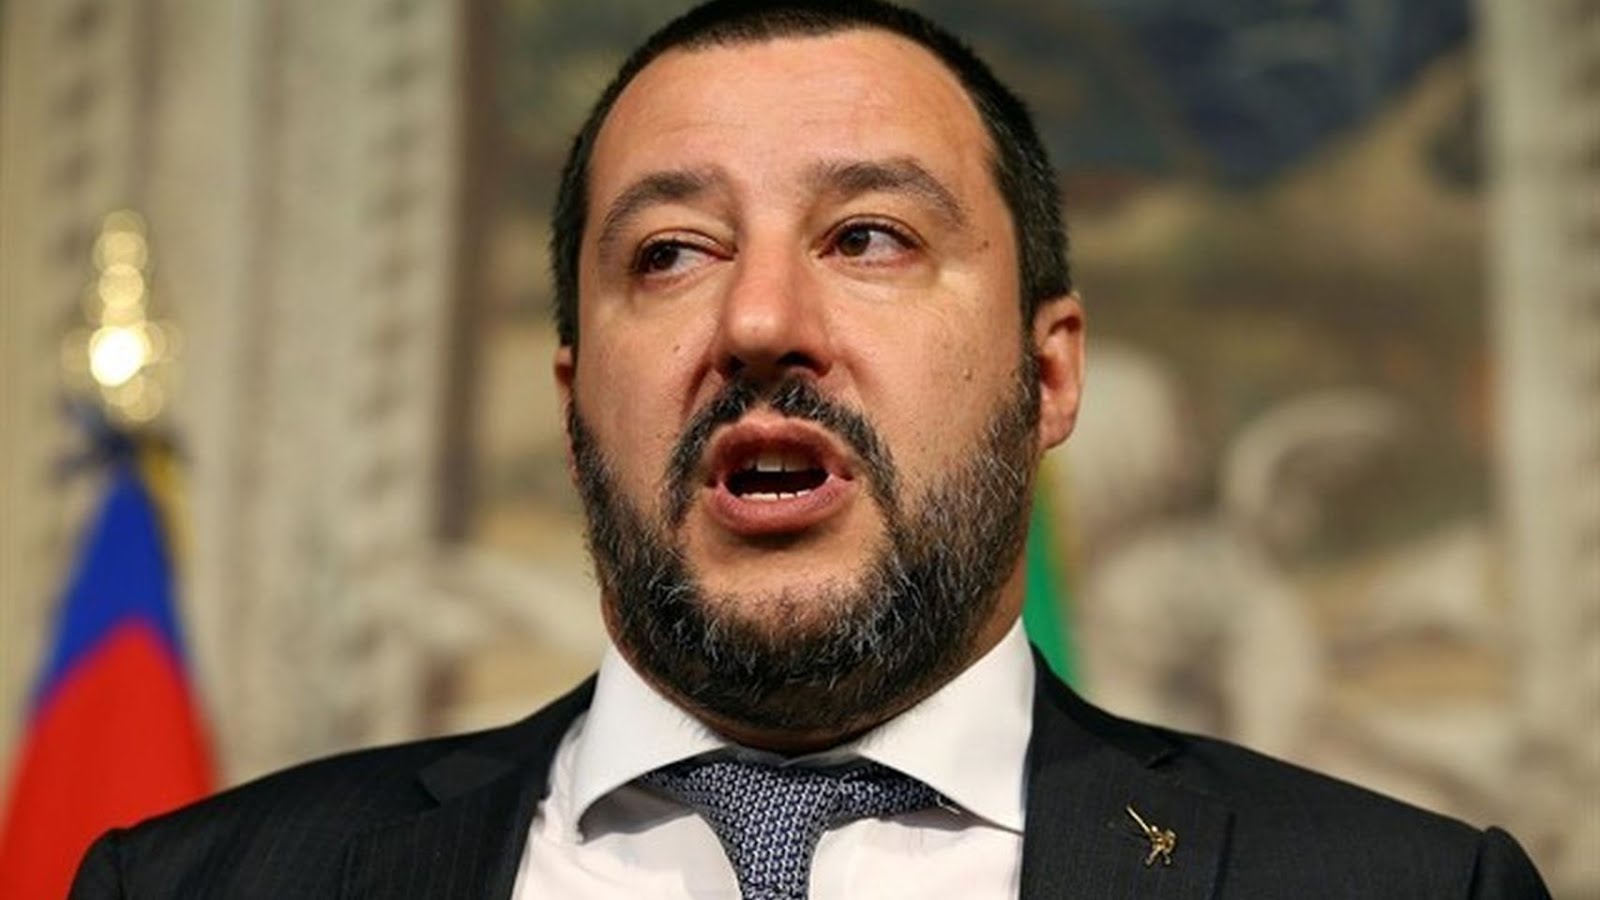 Salvini prepara expulsiones masivas en Italia para “salvar vidas”